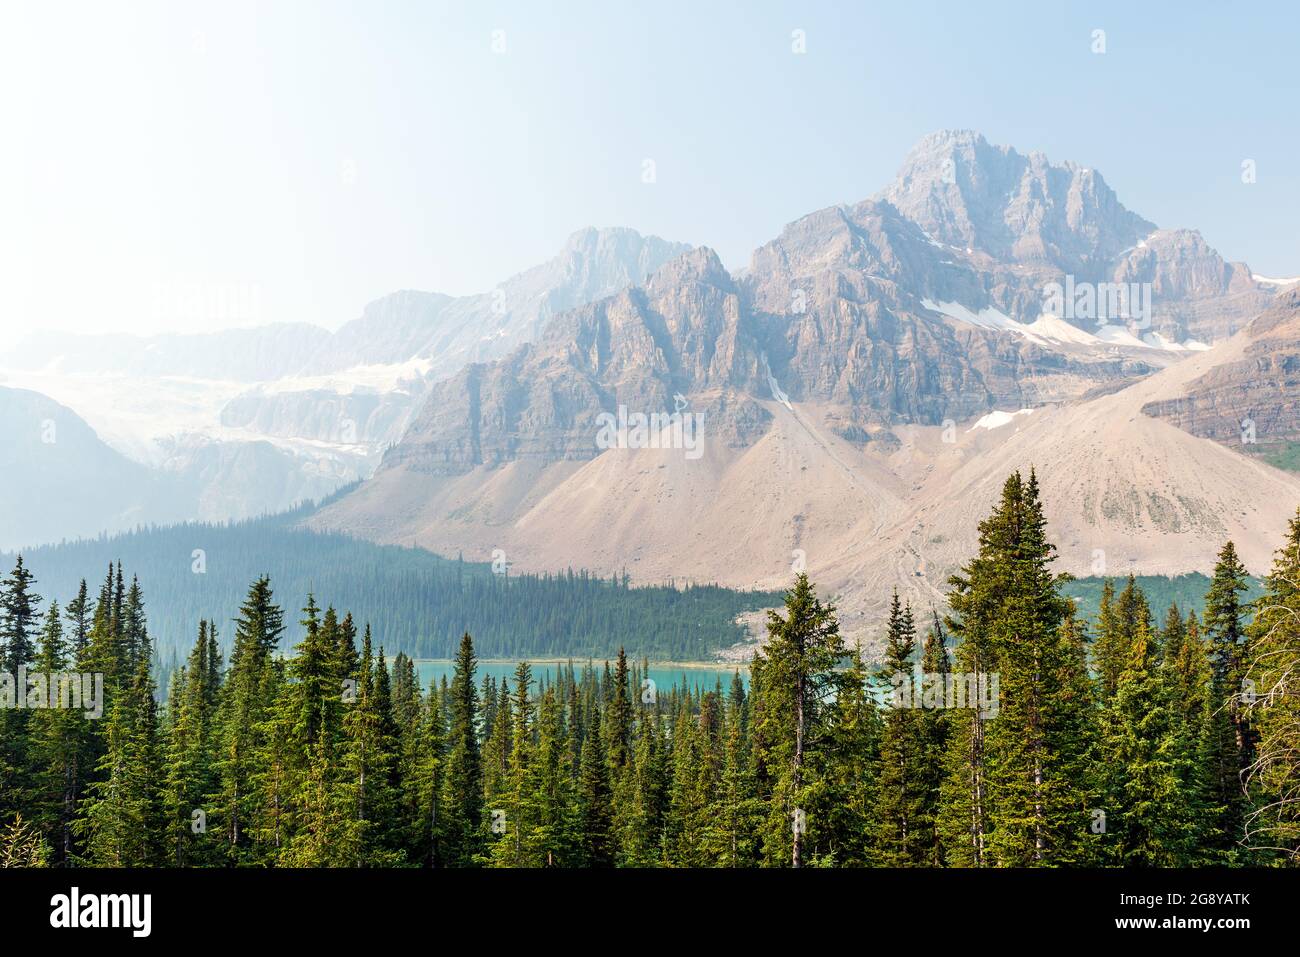 Peyto Lake und Bow Summit mit Pinien bei Waldbränden, die Rauchschwaden verursachen, Banff National Park, Alberta, Kanada. Stockfoto